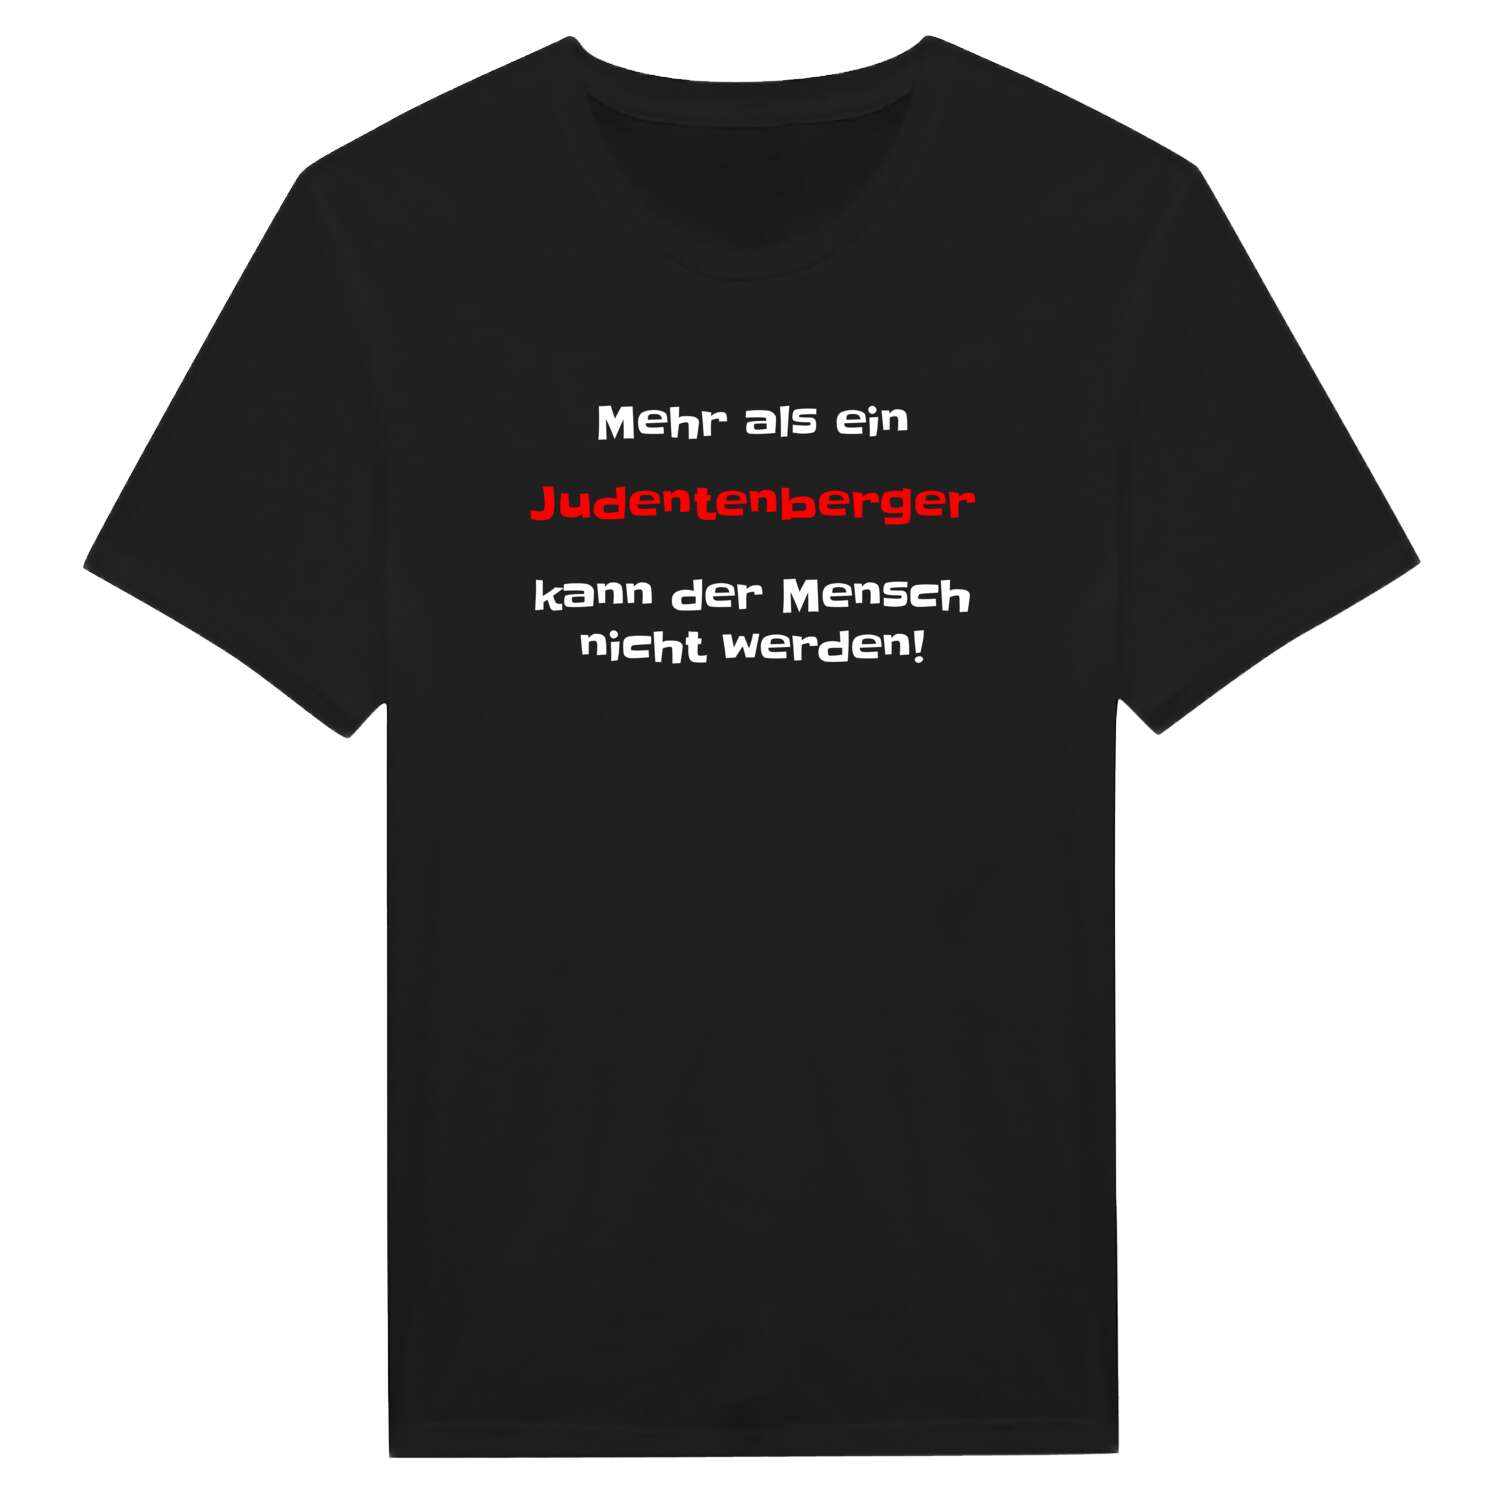 Judentenberg T-Shirt »Mehr als ein«